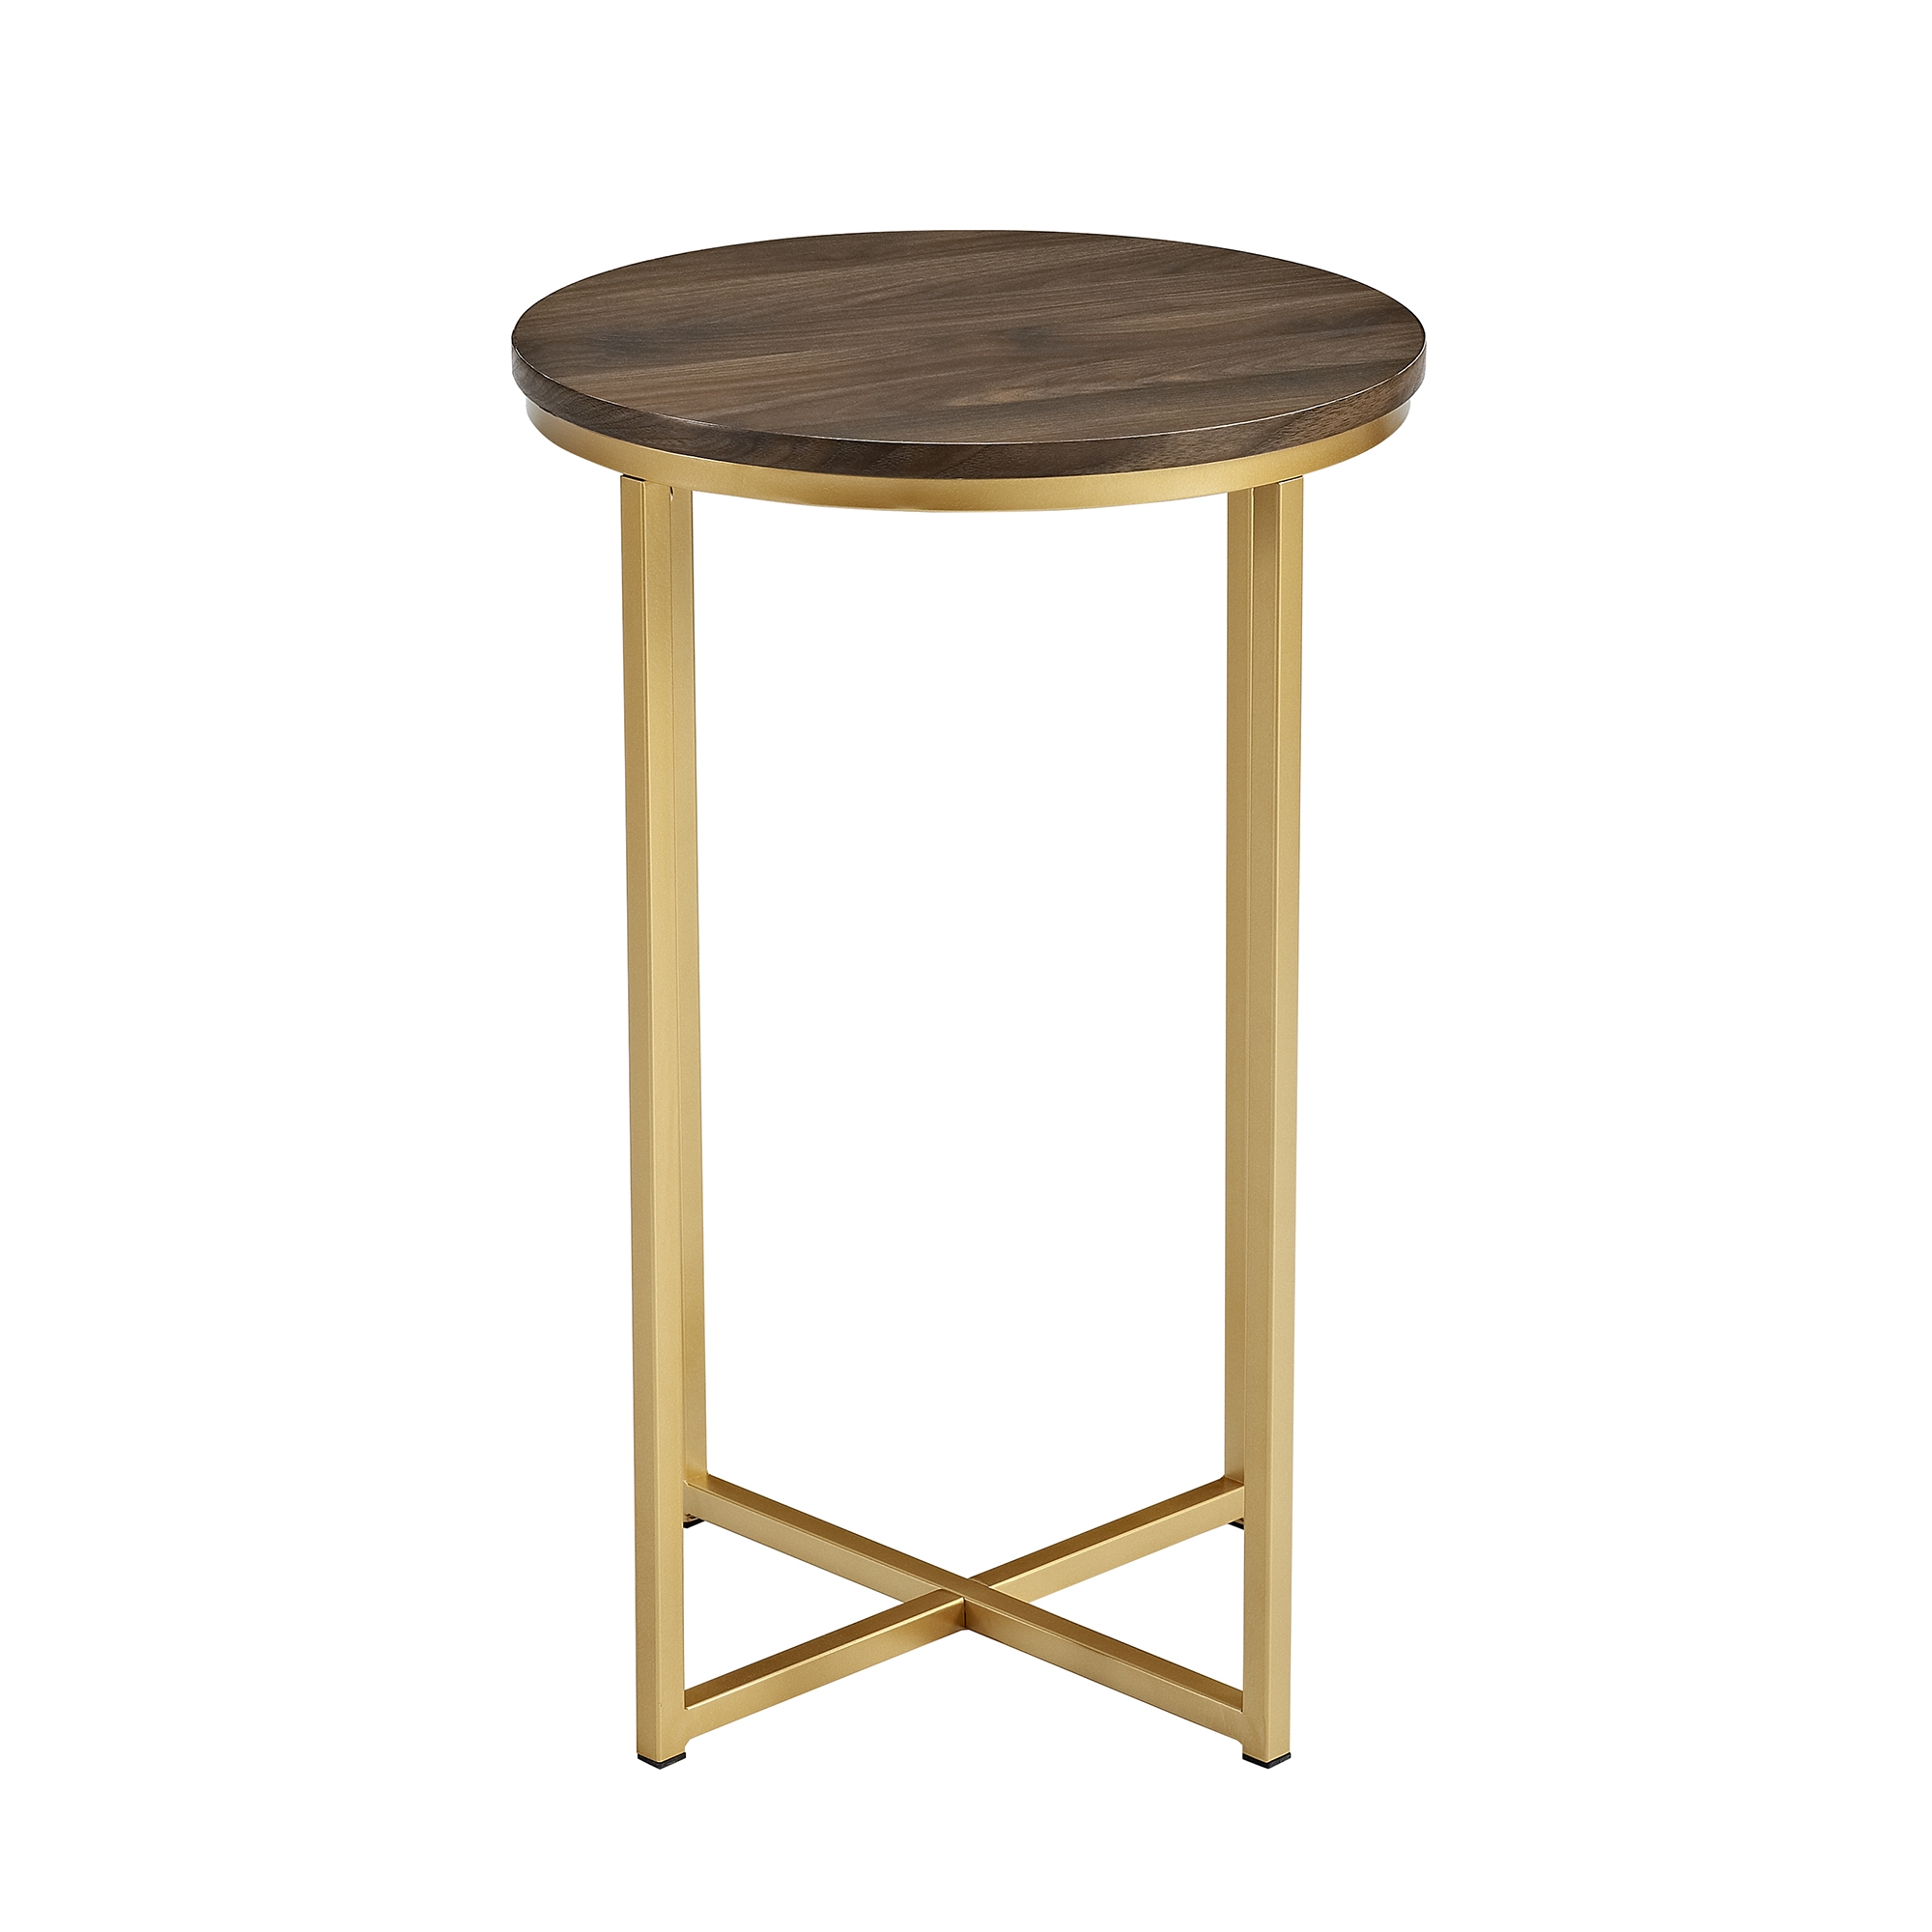 Alissa 16" Glam Round Side Table - Dark Walnut/Gold - Image 1